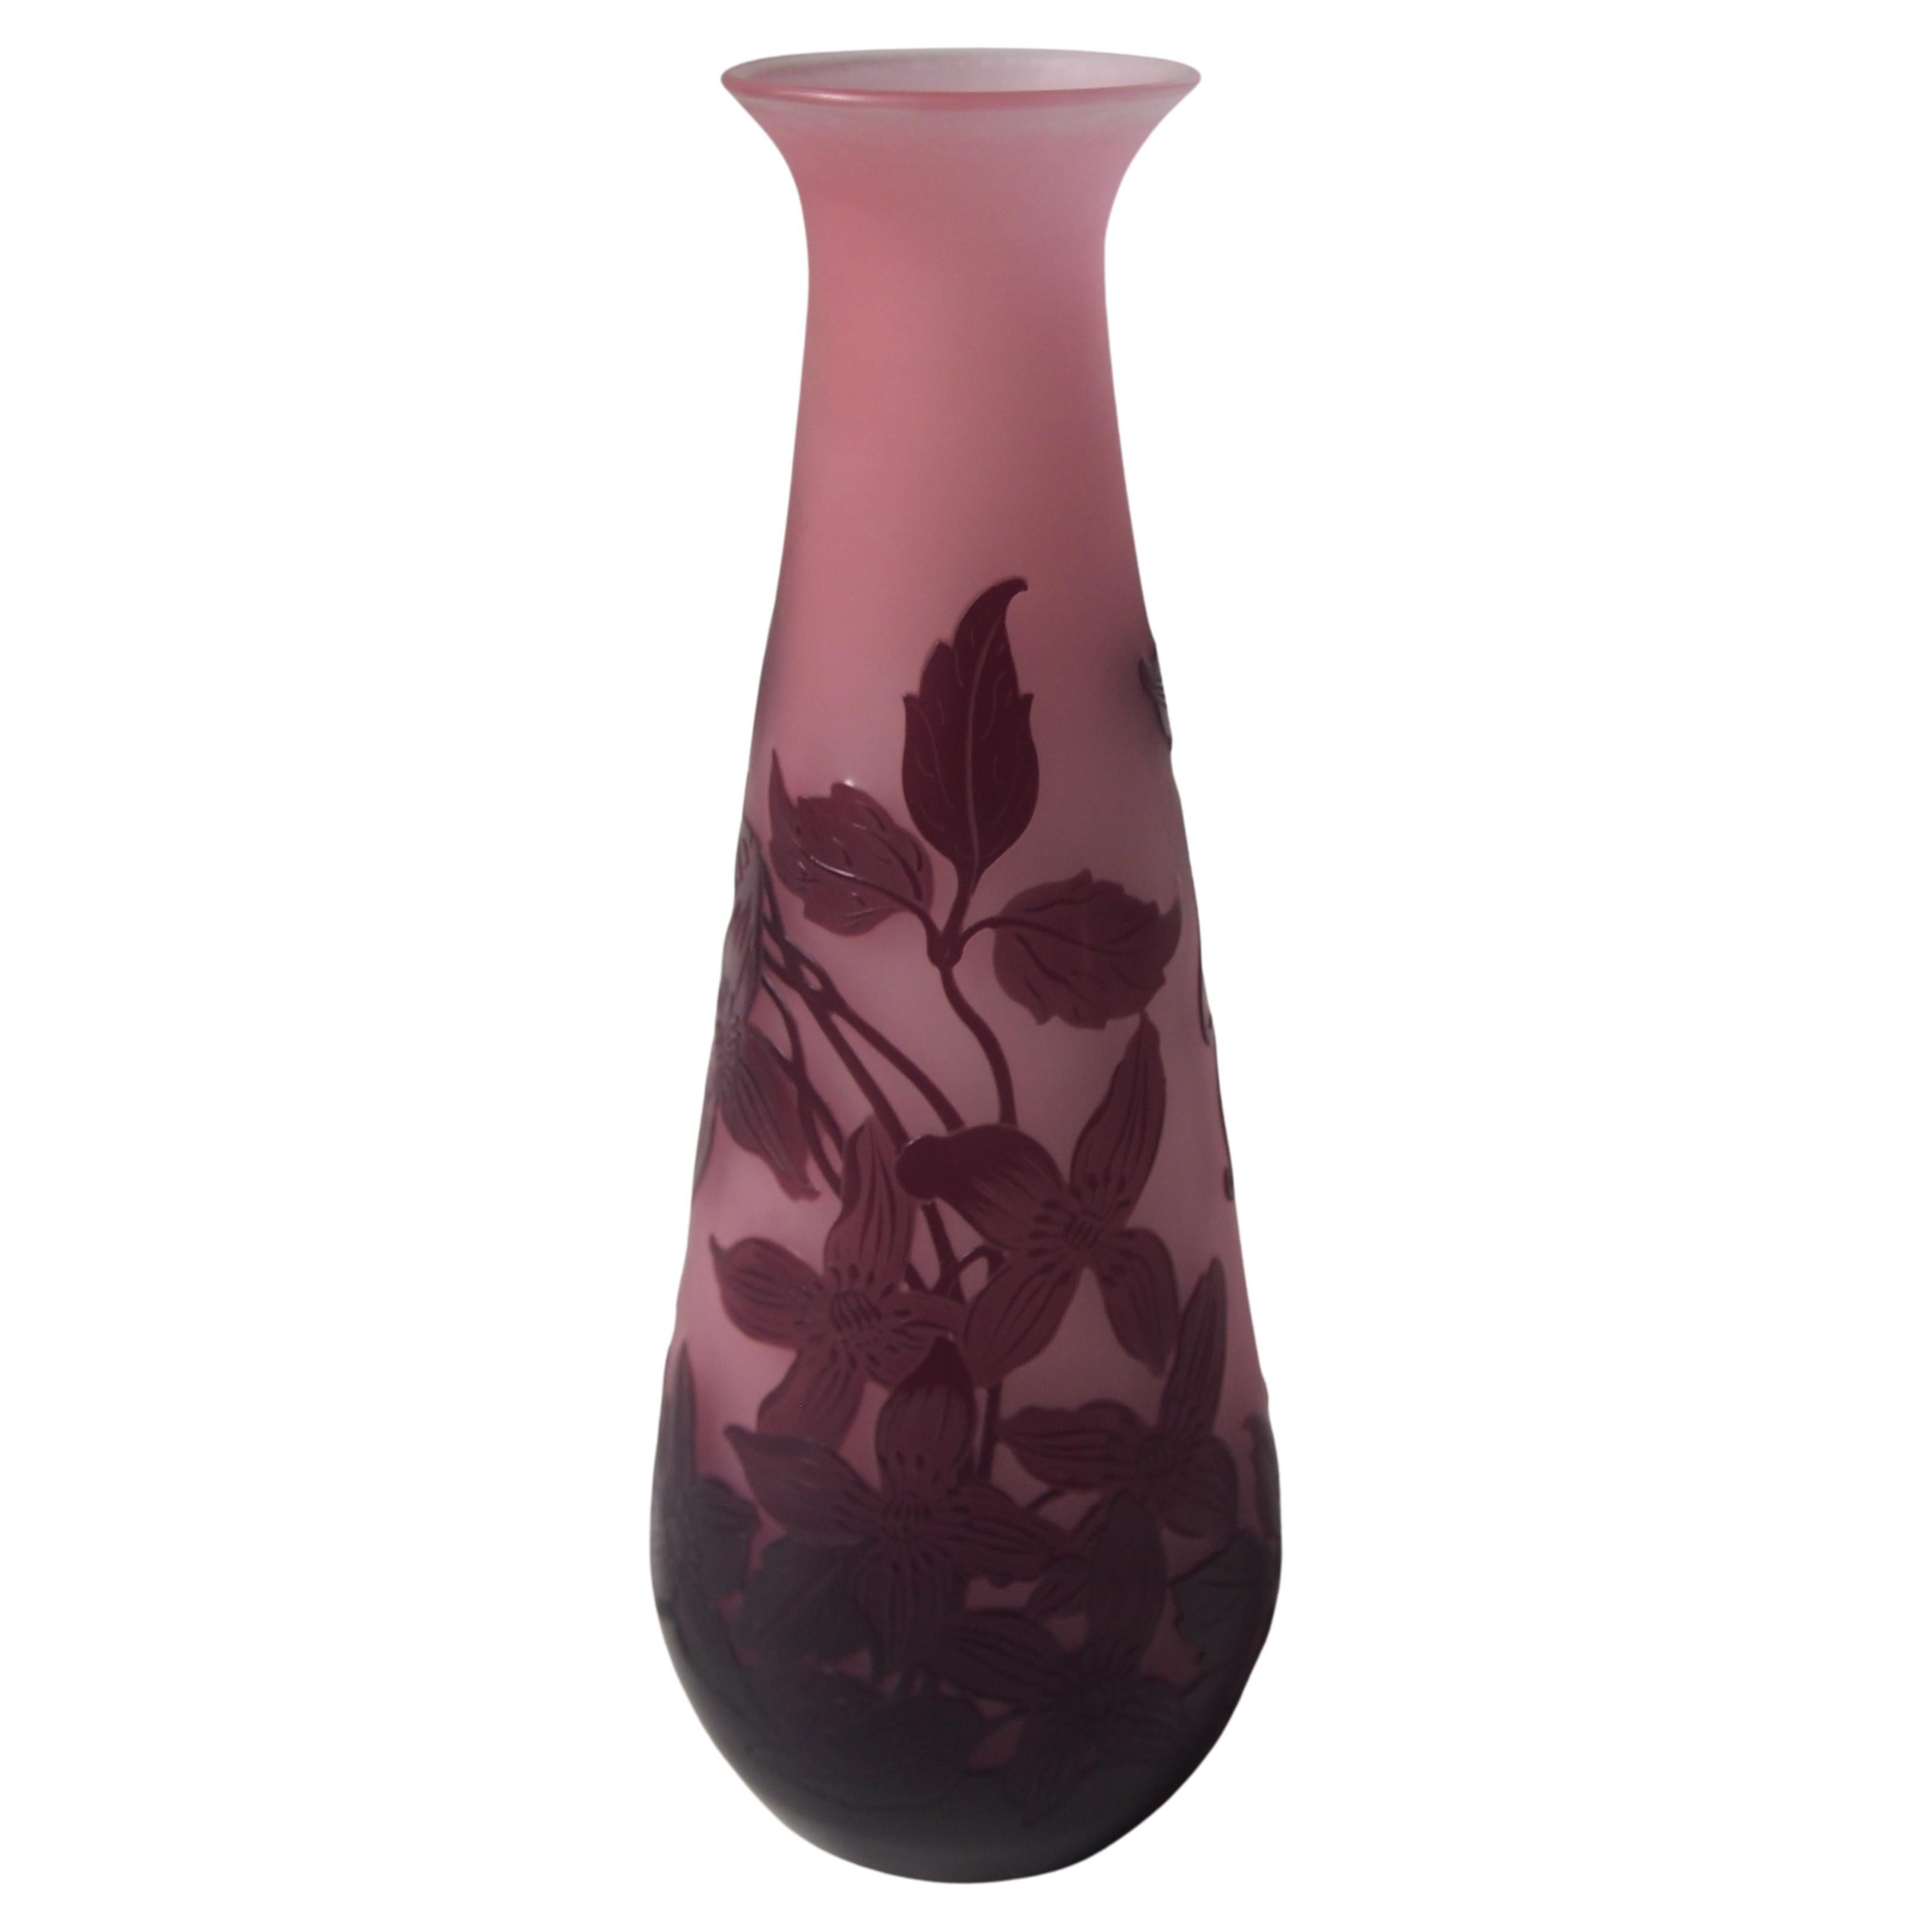 Französische Cameo-Vase im Art nouveau-Stil in Rosa und Lila, signiert Emile Galle, um 1920